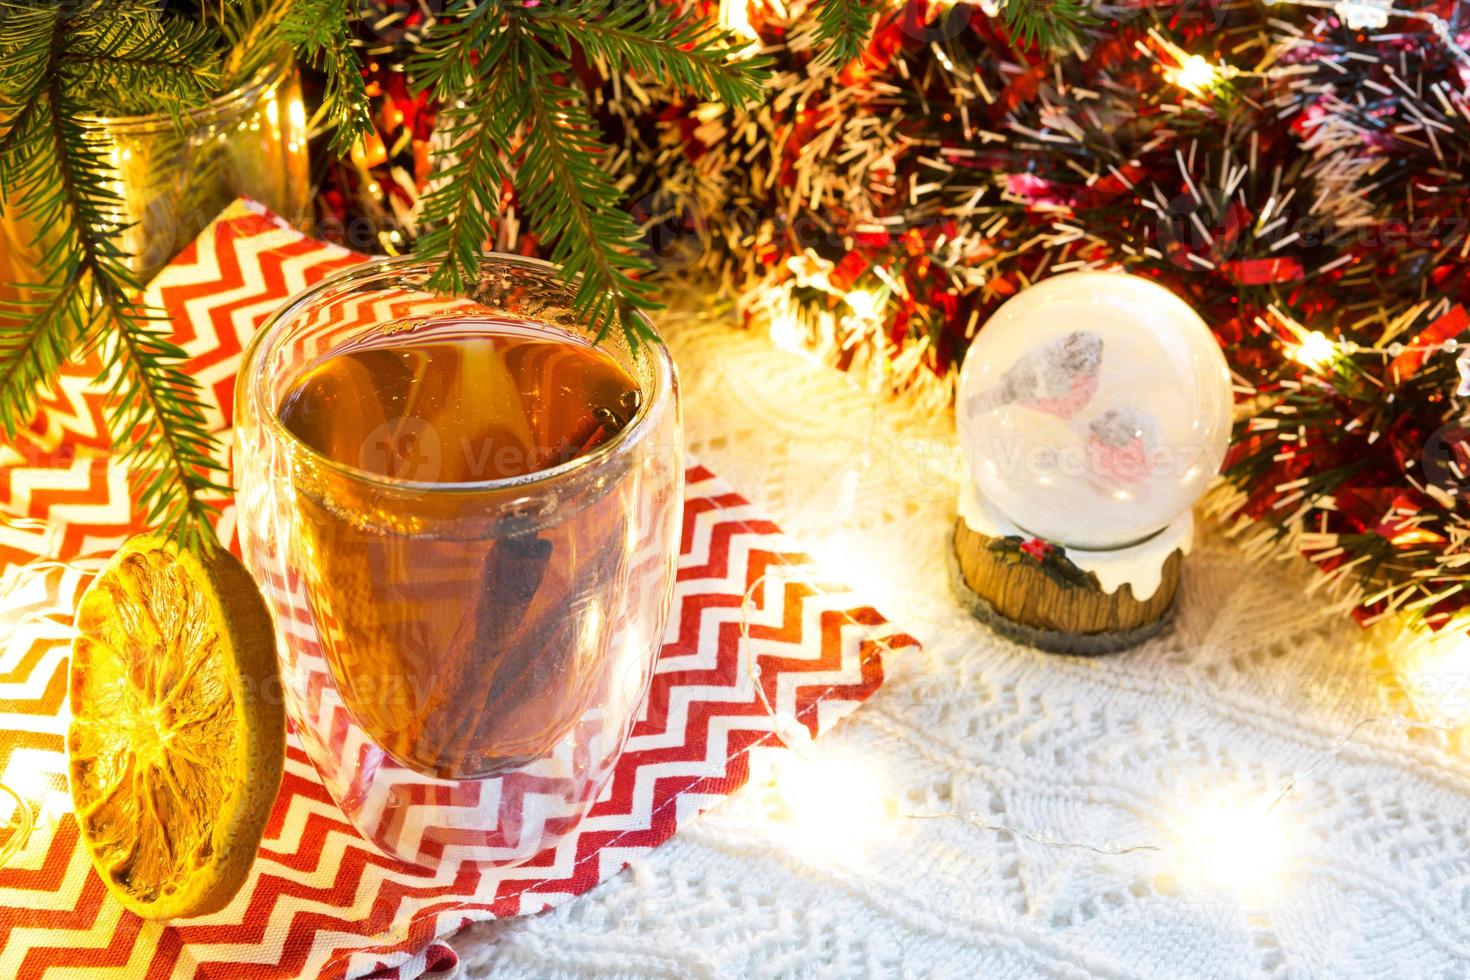 copo de vidro transparente de parede dupla com chá quente e paus de canela na mesa com decoração de natal. atmosfera de ano novo, fatia de laranja seca, guirlanda e enfeites, globo de neve com bullfinches foto